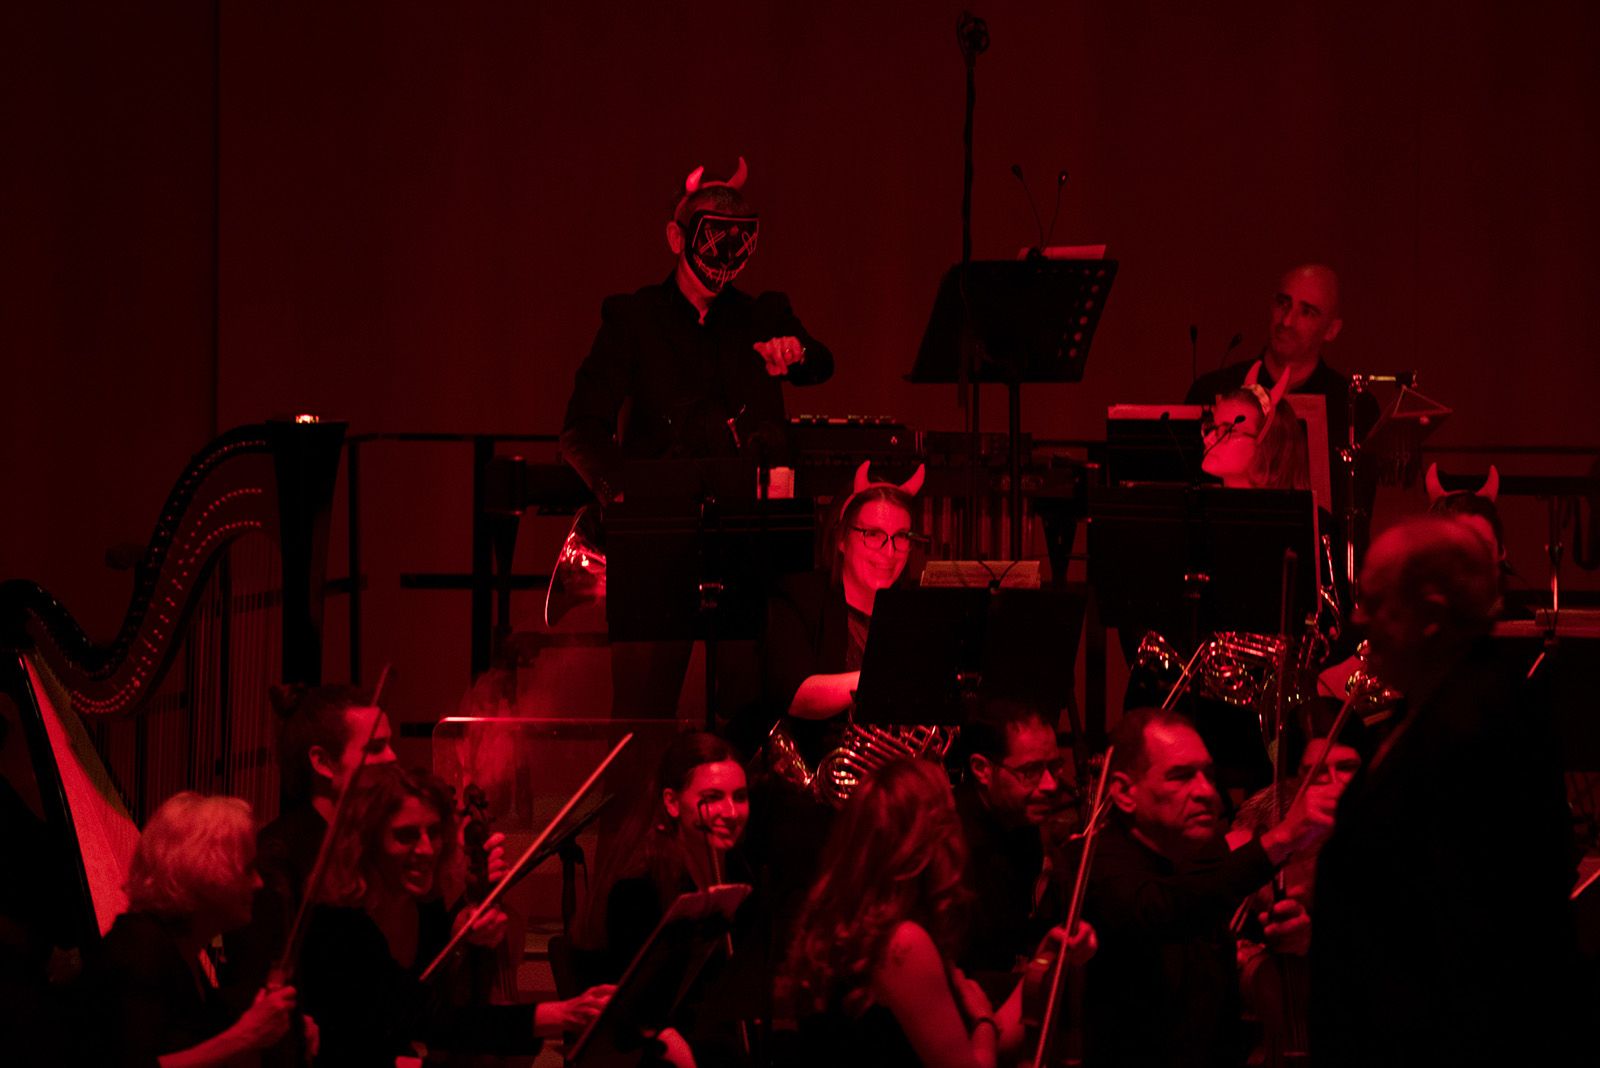 Concert de Valsos i Danses de l'Orquestra Simfònica Sant Cugat. FOTO: Bernat Millet.